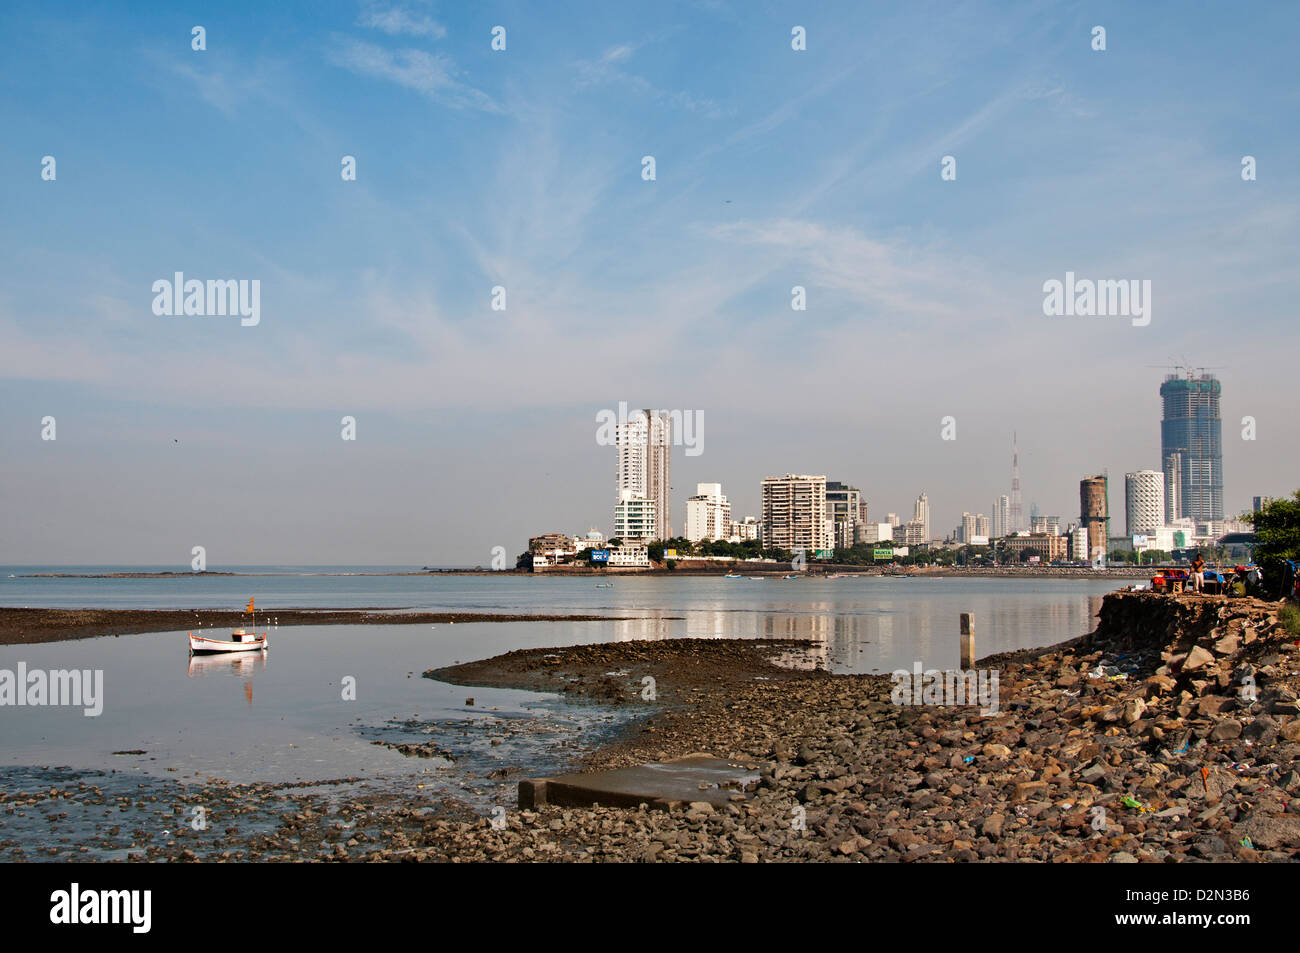 Die Vororte Bandra Mumbai (Bombay) Indien Bucht moderne Architektur gegenüber der Haji Ali Mosque Stockfoto